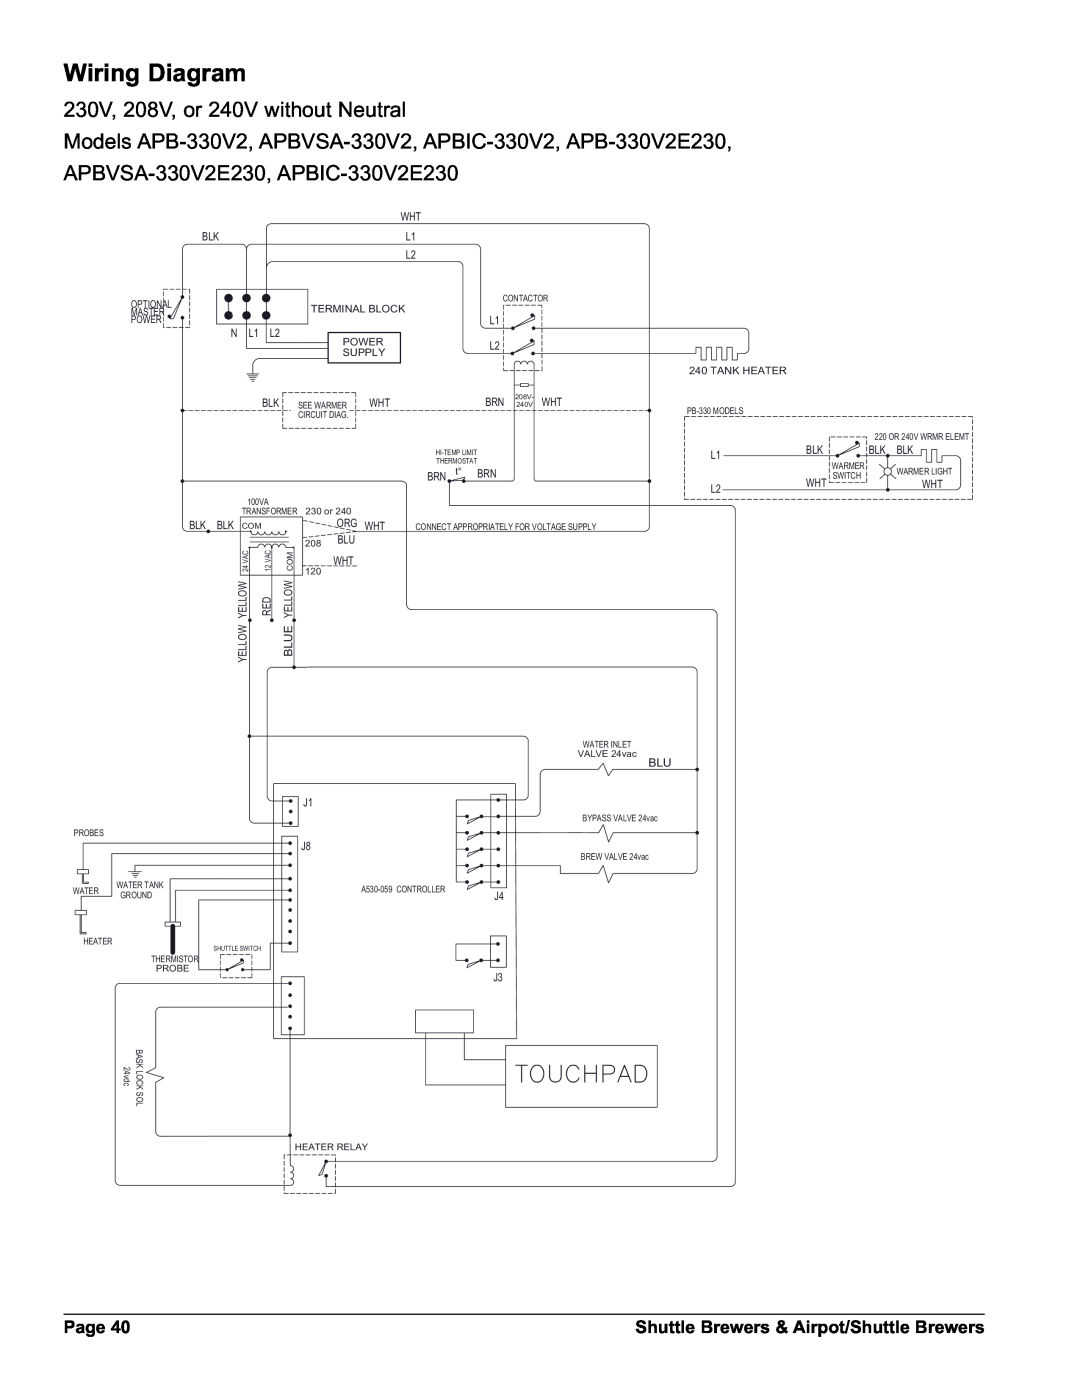 Grindmaster APBIC-430V2E230 Wiring Diagram, 4/5#0!$, 230V, 208V, or 240V without Neutral, Page, 1 /, 51 Wƒ %51, 25* +7 